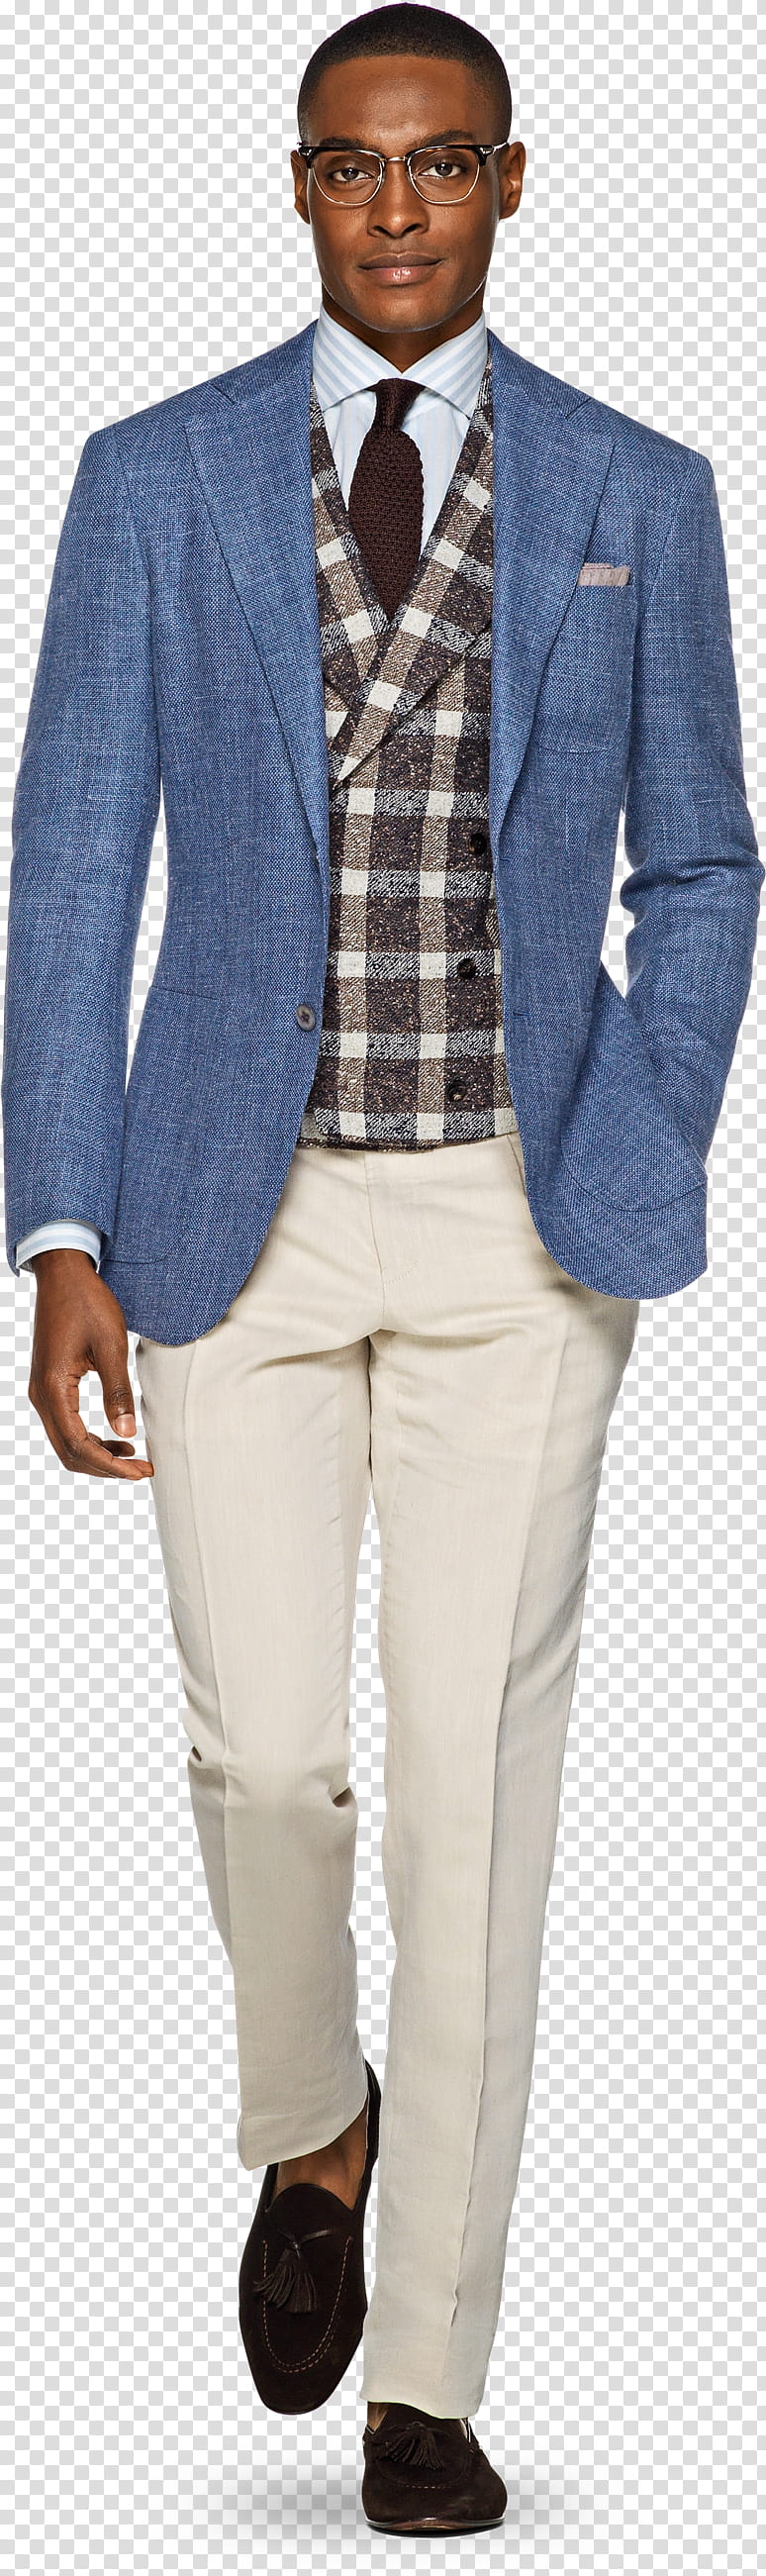 Jeans, Blazer, Suit, Tartan, Textile, Tuxedo, Clothing, Outerwear transparent background PNG clipart